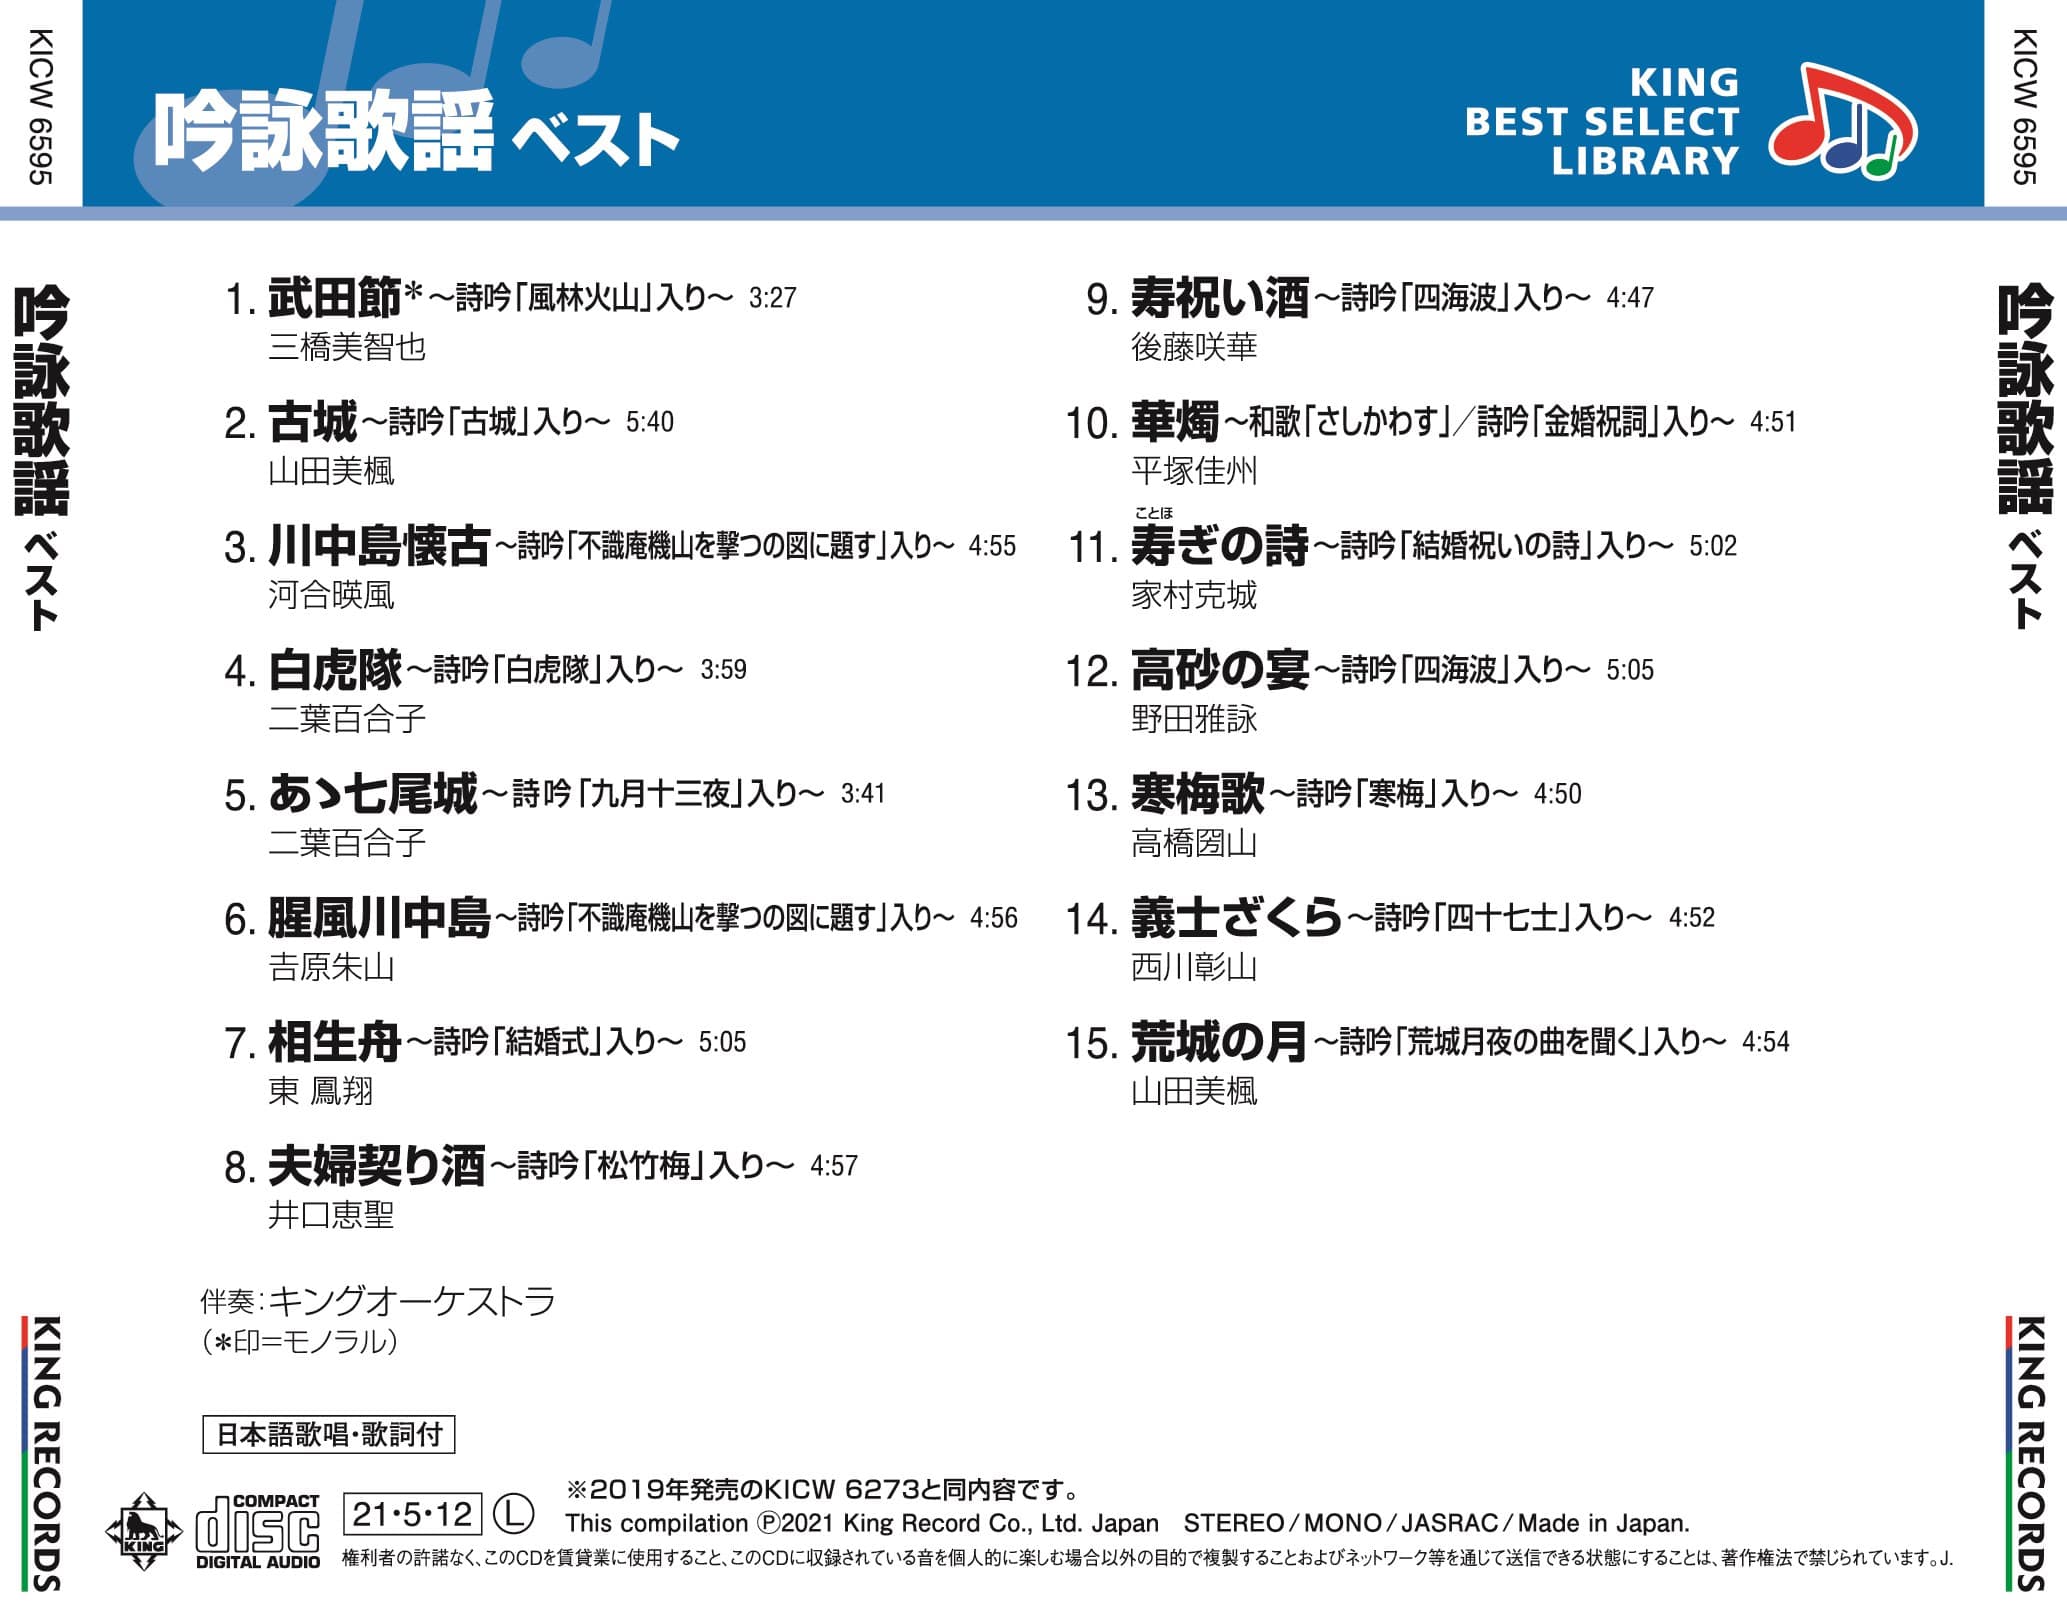 吟詠歌謡 ベスト キング・ベスト・セレクト・ライブラリー2021